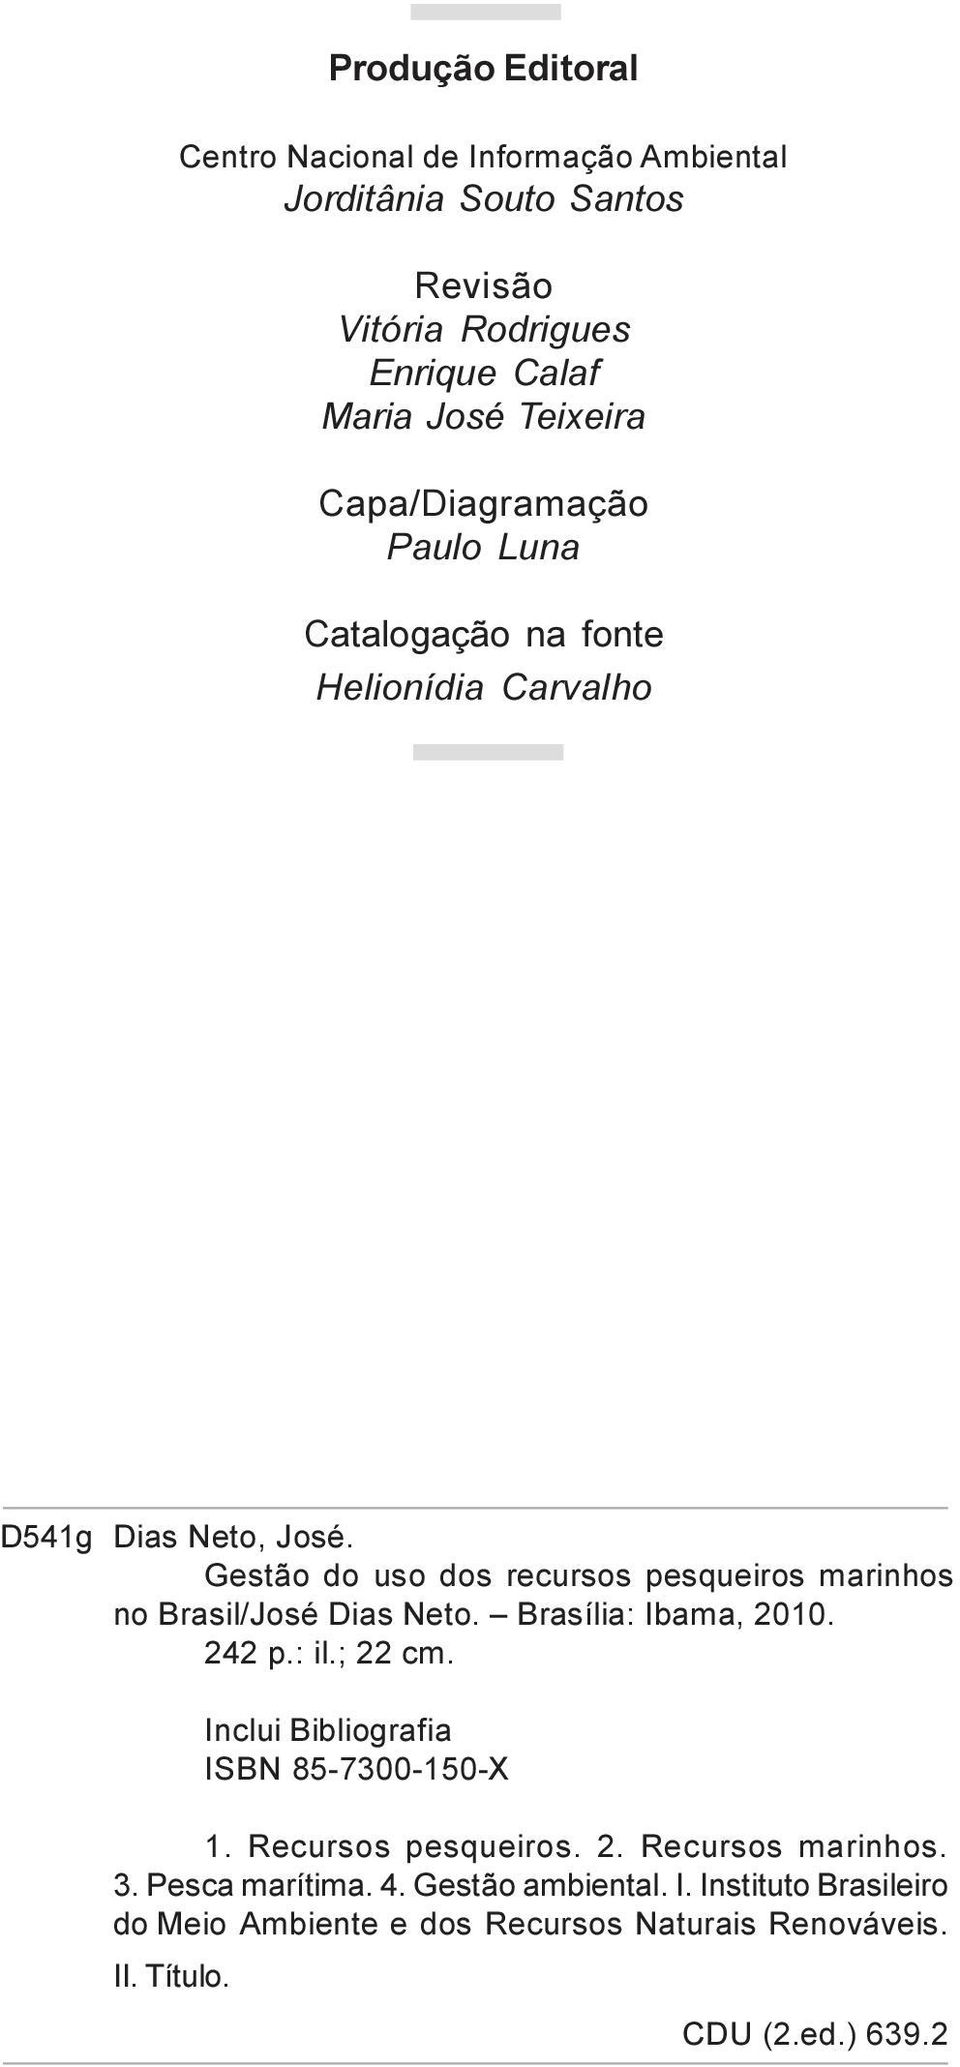 Gestão do uso dos recursos pesqueiros marinhos no Brasil/José Dias Neto. Brasília: Ibama, 2010. 242 p.: il.; 22 cm.